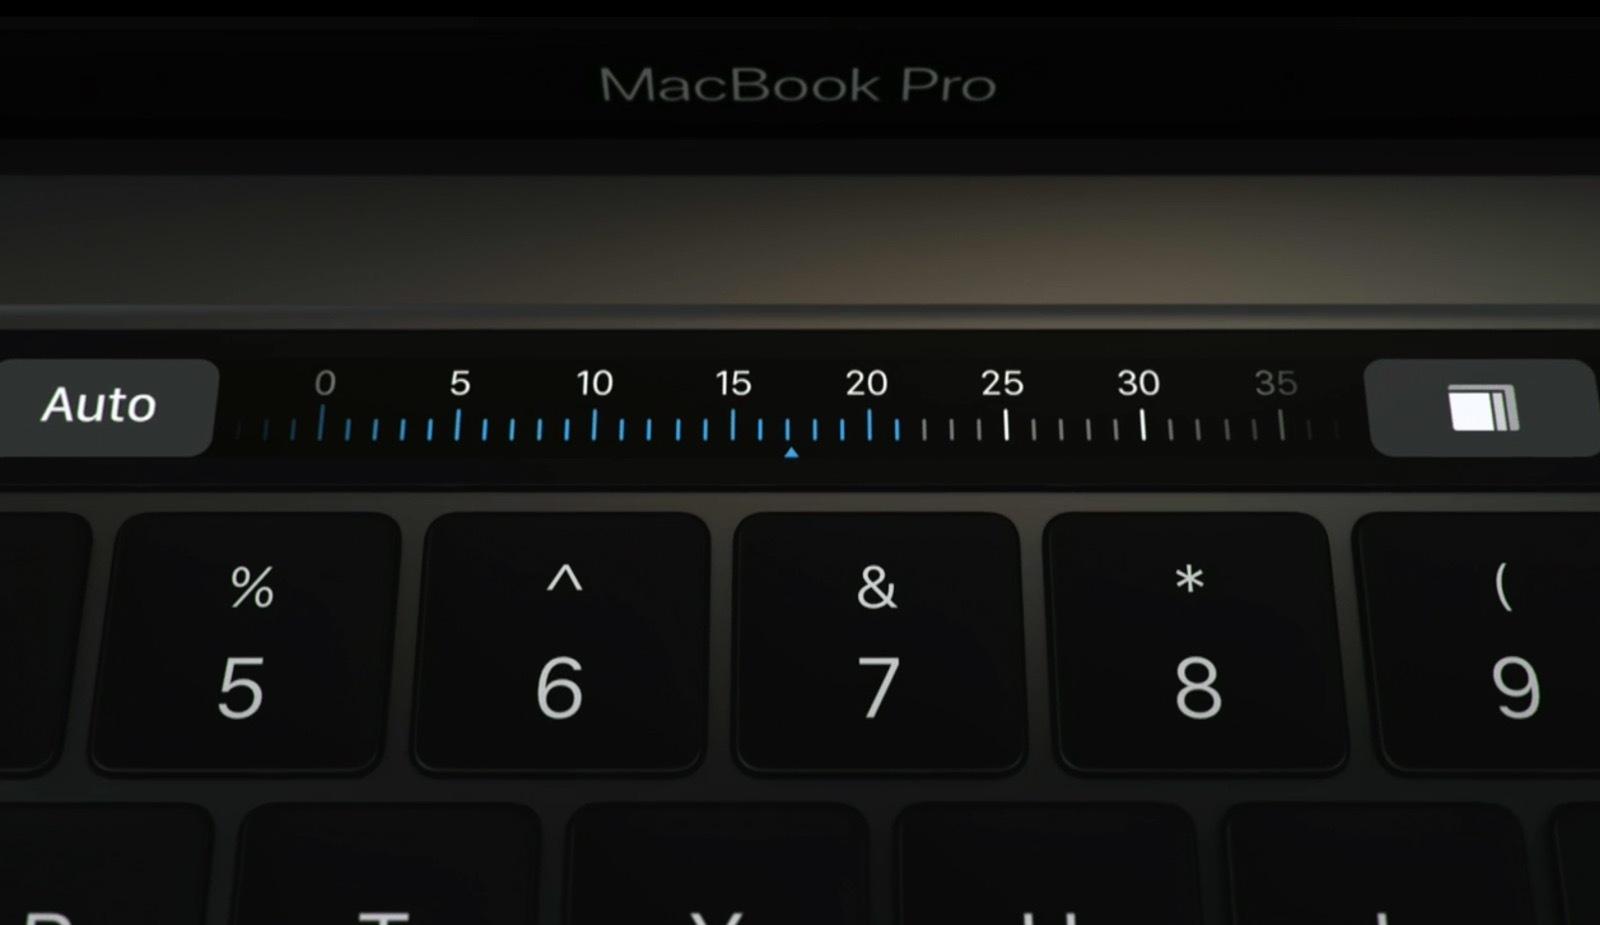 macbook-pro